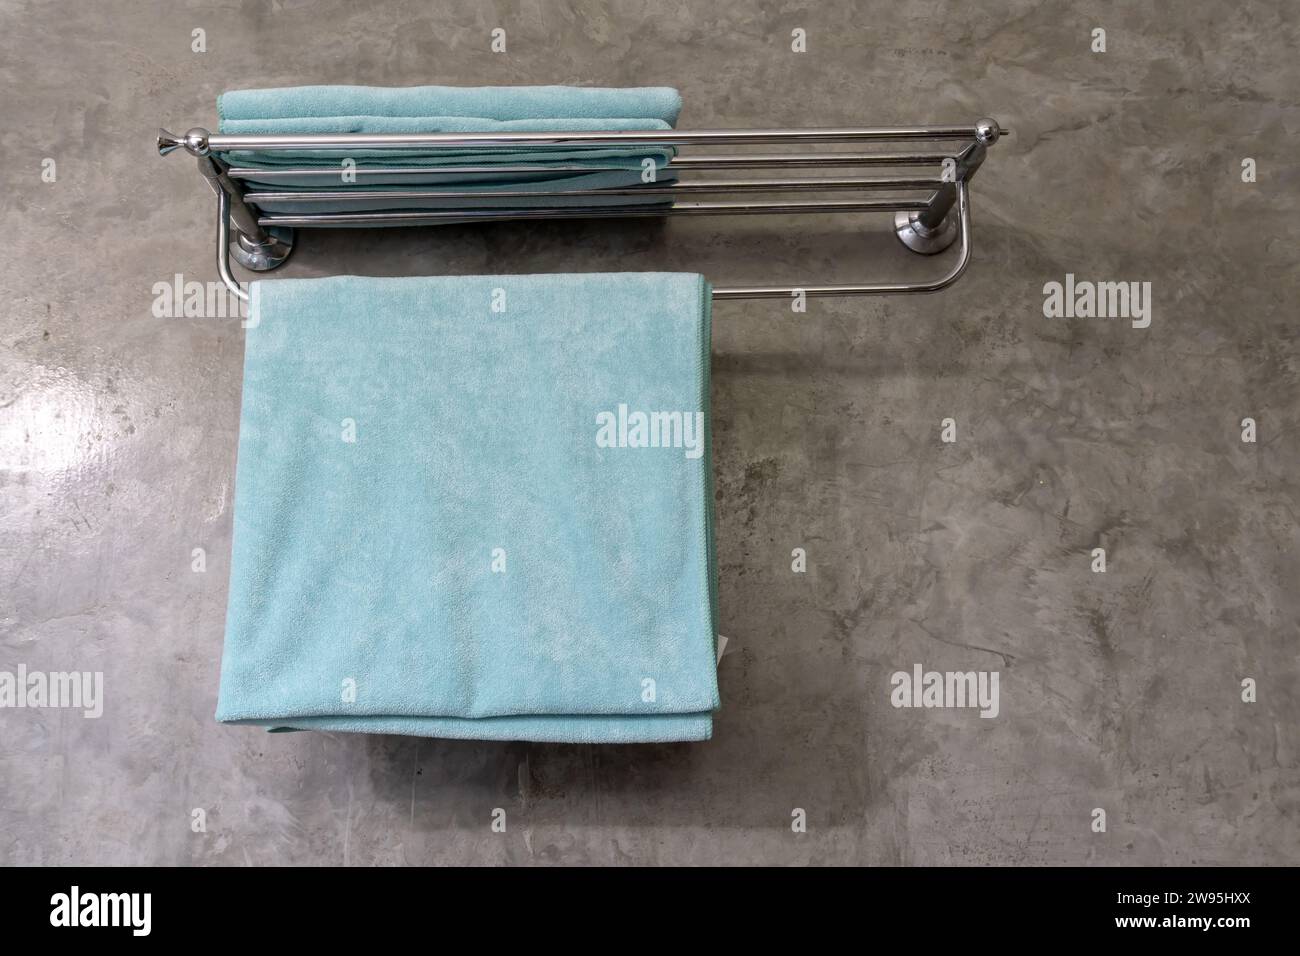 La serviette bleue est suspendue sur le cintre dans les toilettes de la station ou les toilettes préparées pour les clients. Banque D'Images